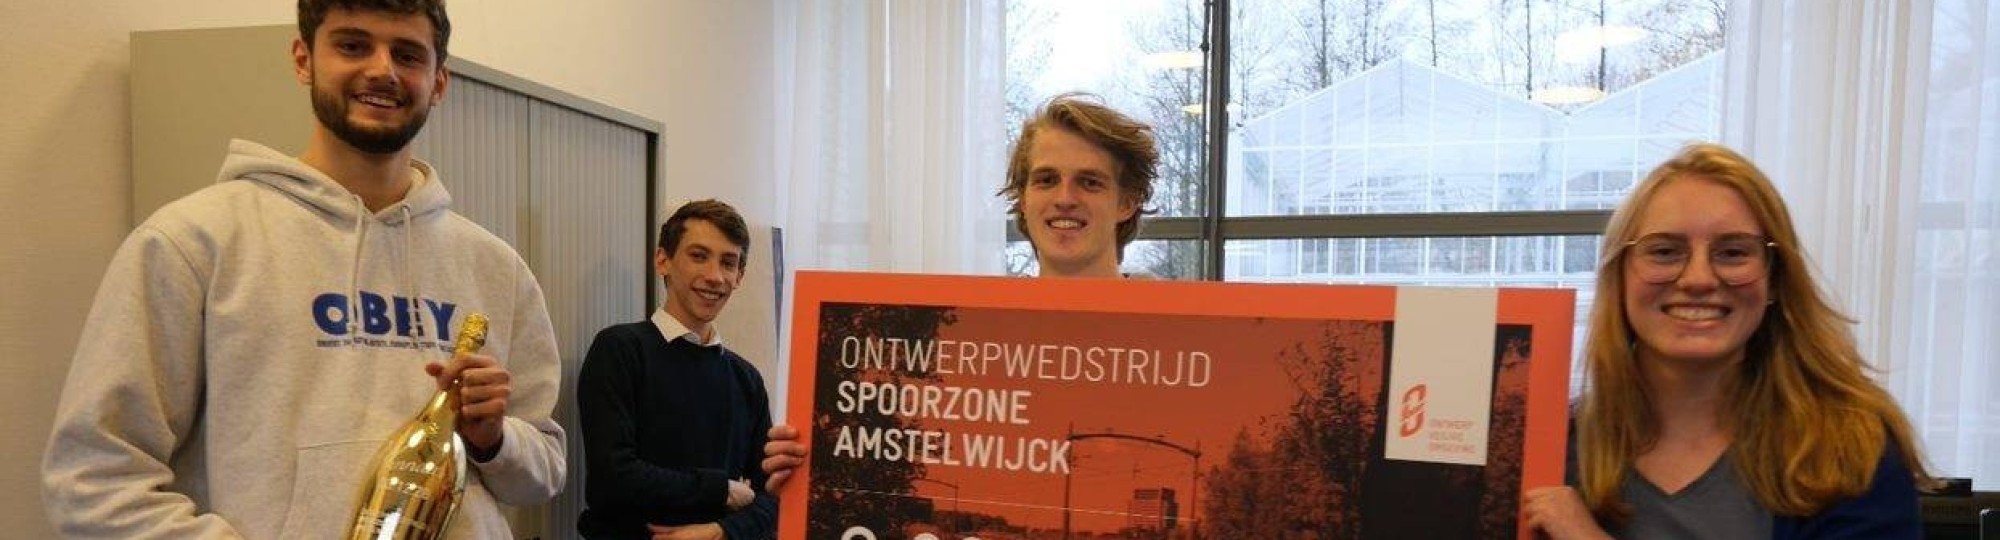 Built wint 1e prijs in ontwerpwedstrijd. Het betreft de Ontwerp Veilige Omgeving (OVO) voor de nieuwe wijk Amstelwijck in de gemeente Dordrecht.